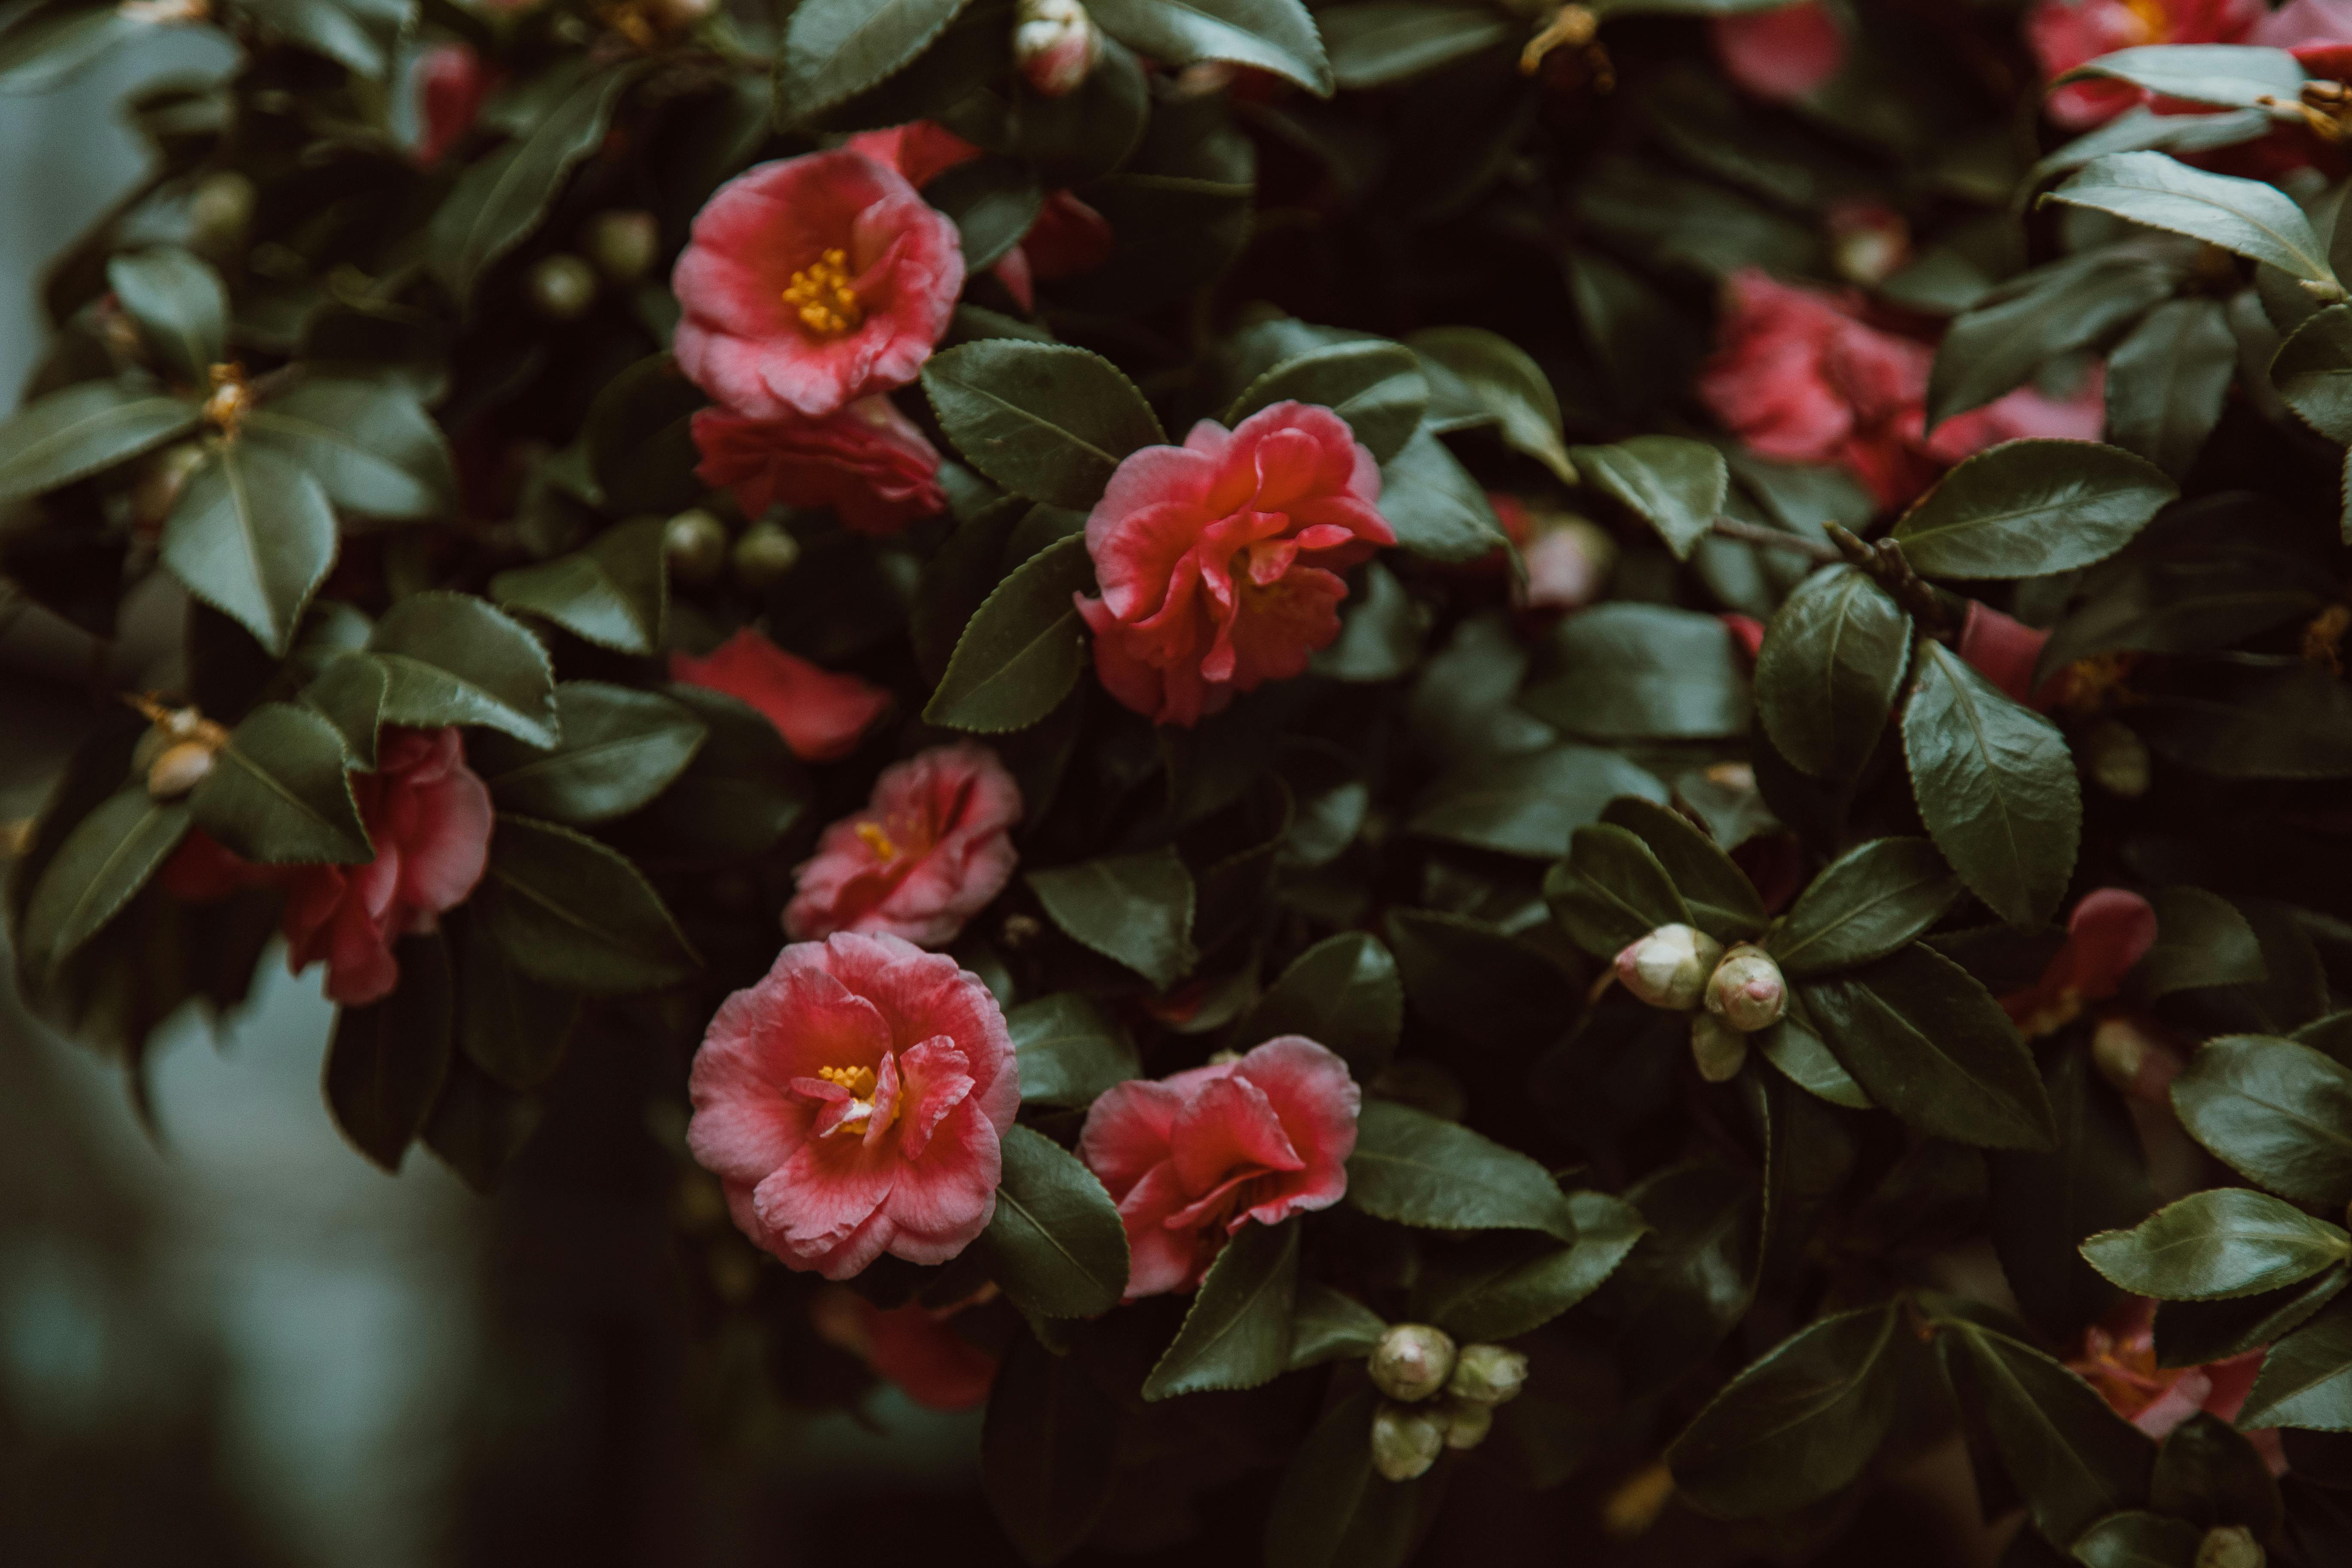 Khám phá loạt ảnh stock hoa nở đầy tán lá xanh miễn phí, đầy màu sắc và đem đến cho bạn sự giải trí và thư giãn nhẹ nhàng mỗi ngày.